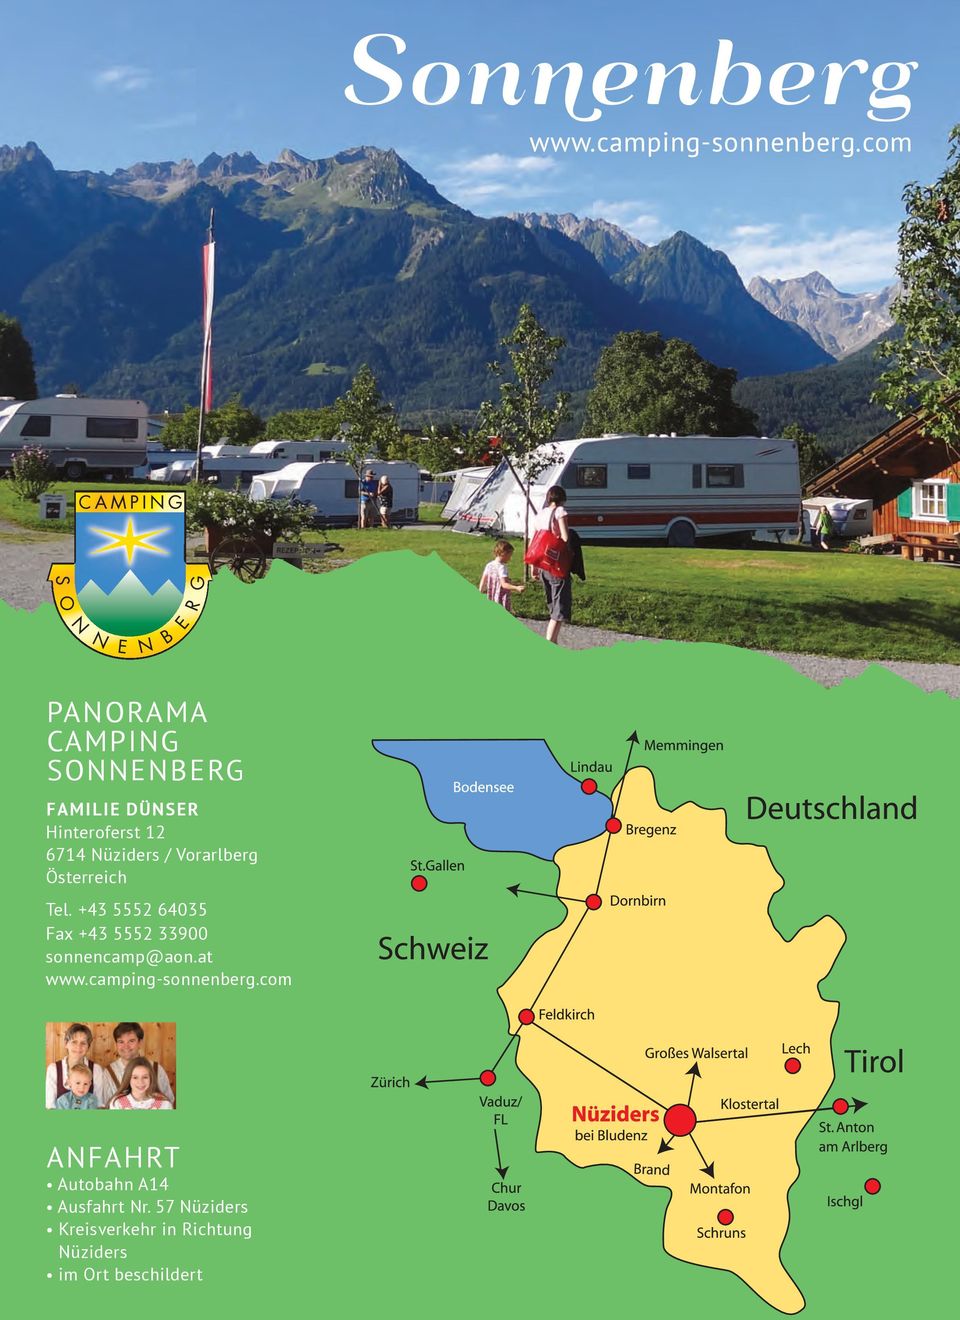 Vorarlberg Österreich Tel. +43 5552 64035 Fax +43 5552 33900 sonnencamp@aon.